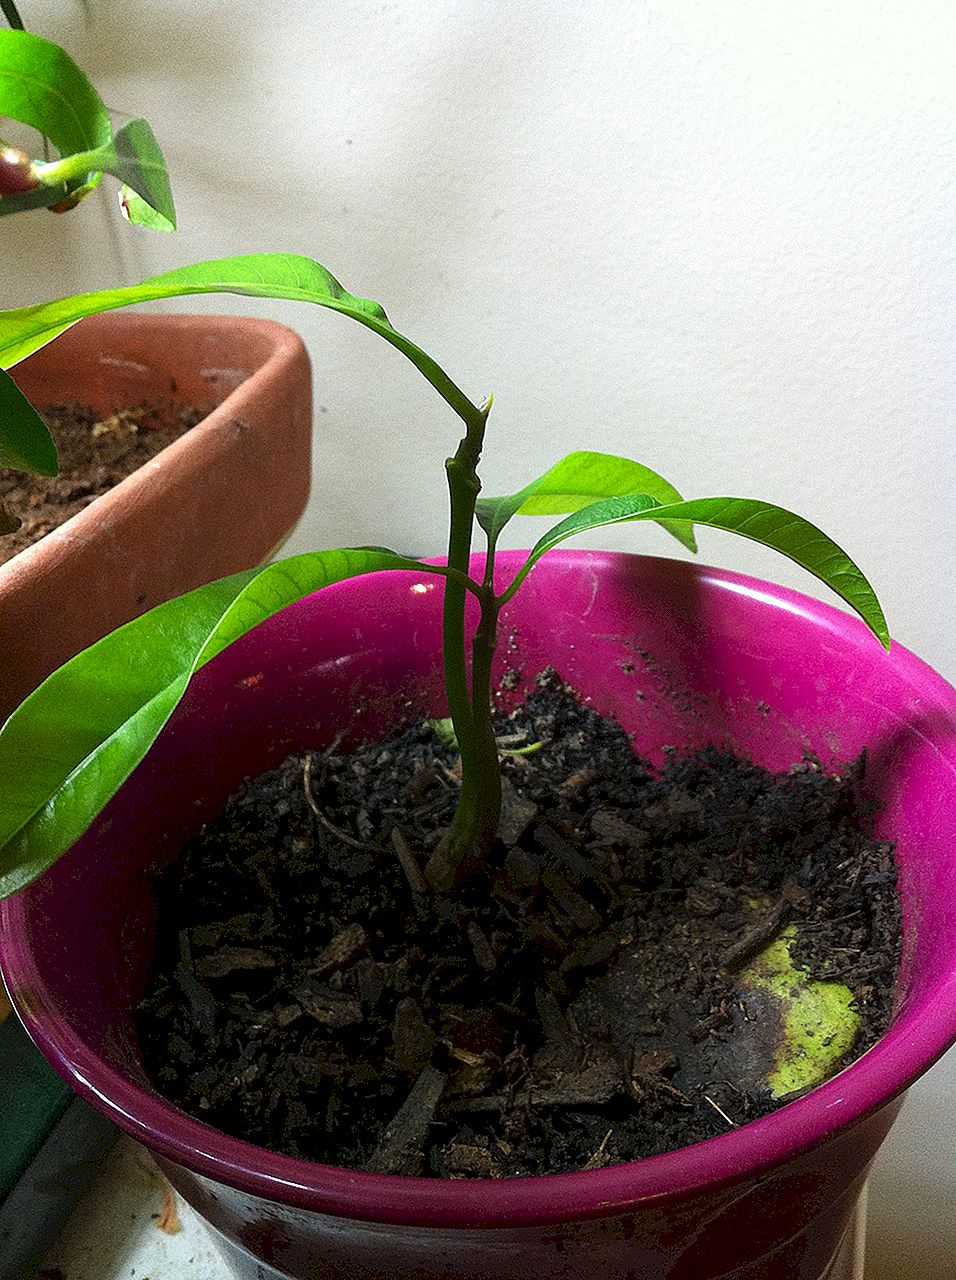 Тропическое дерево в домашних условиях: как вырастить манго из косточки